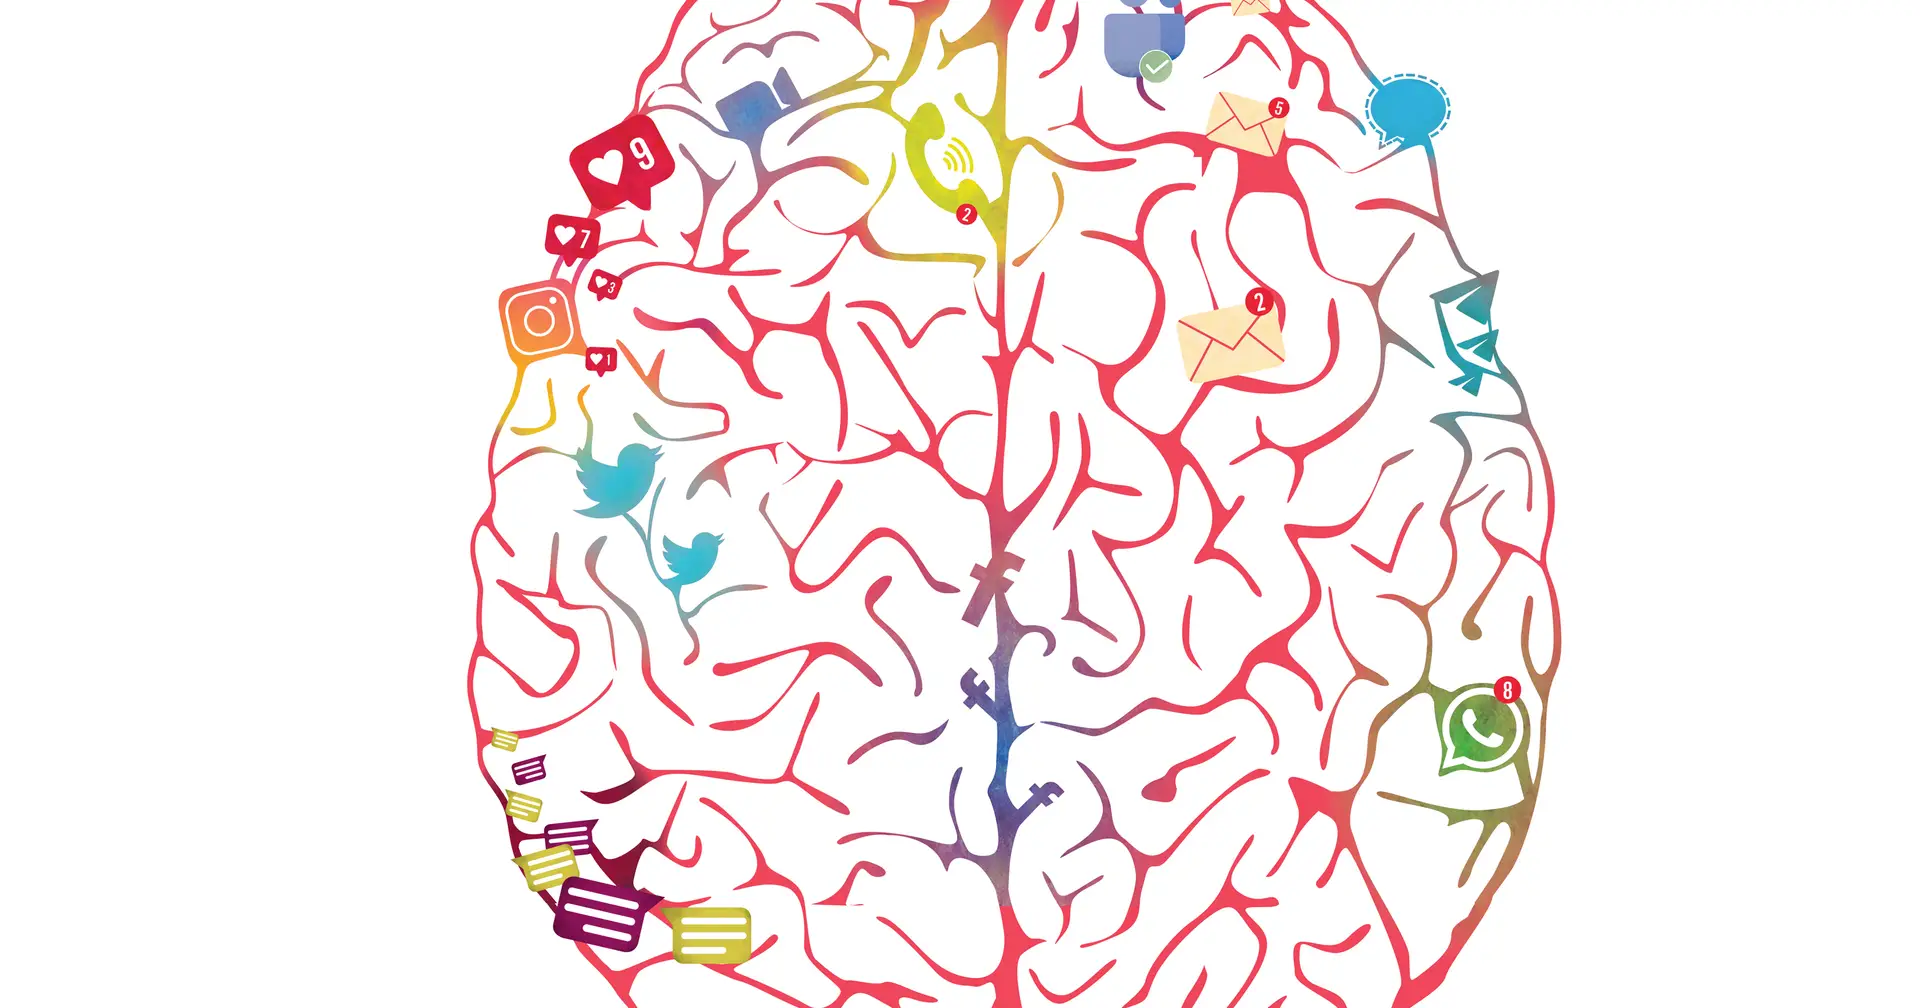 „Wir erleben einen Prozess des kognitiven Verfalls“: Das Smartphone verändert unser Gehirn und unsere Denkweise